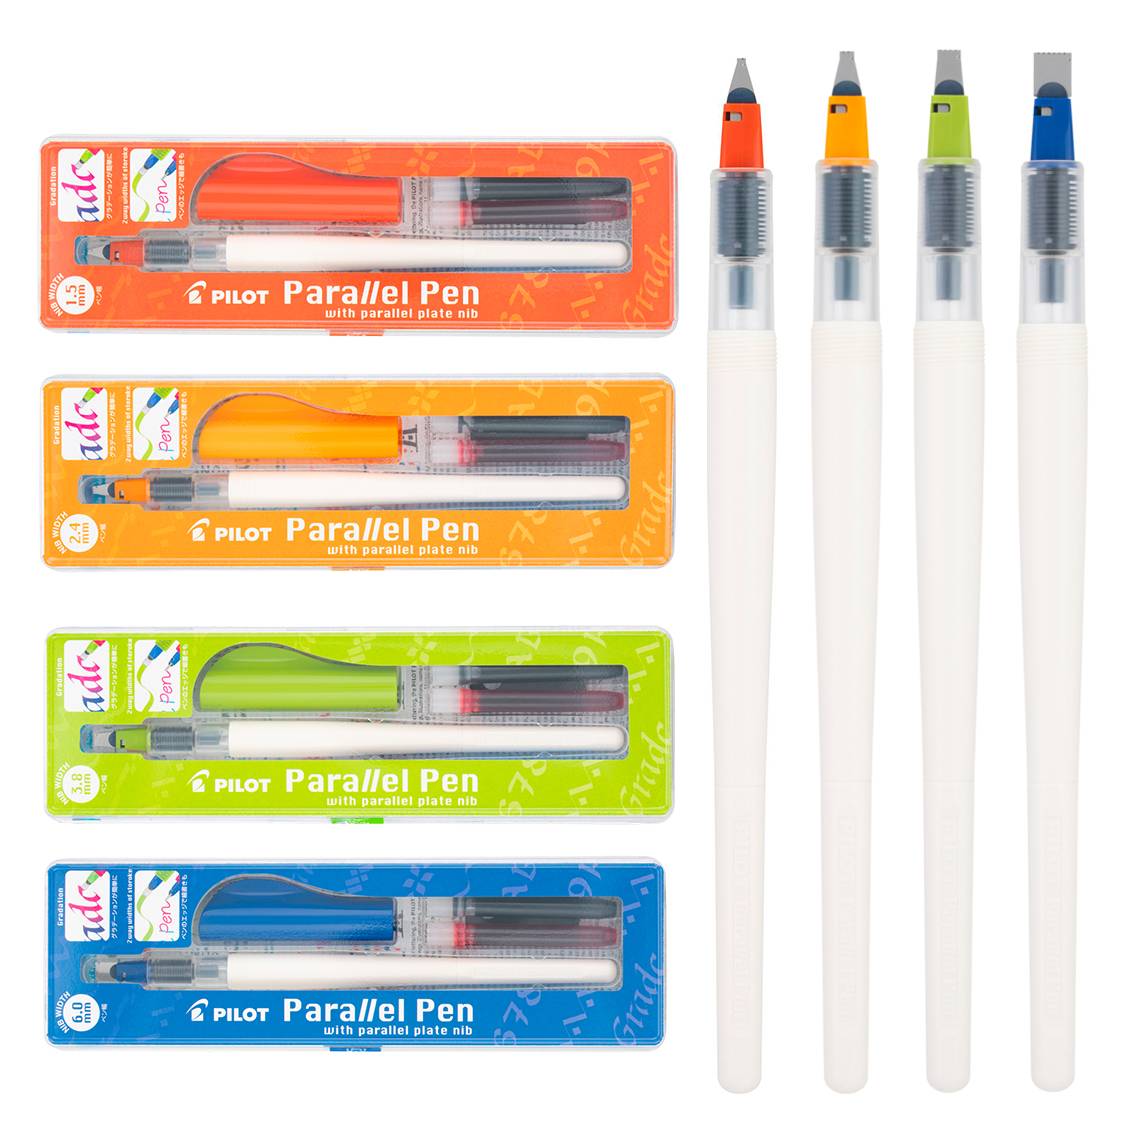 Набор каллиграфических перьев PILOT Parallel Pen Set (4 пера) - 2 908 руб.